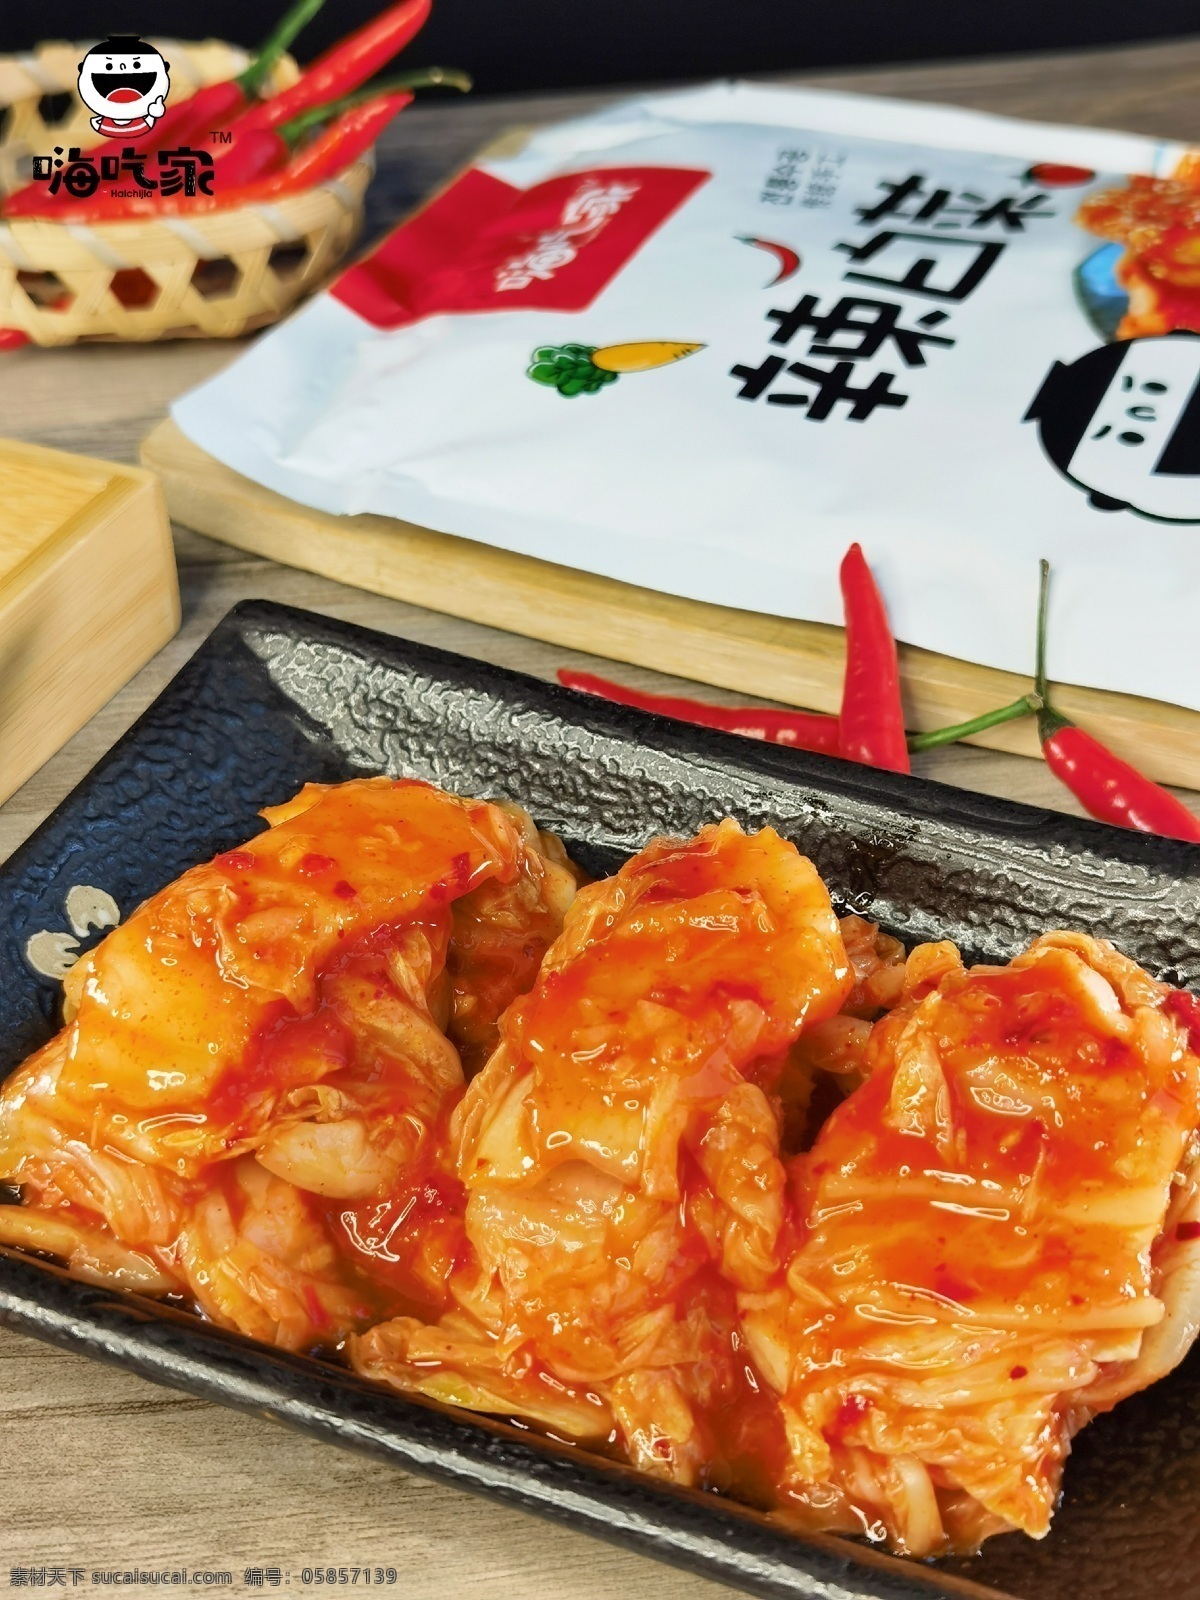 辣白菜图片 辣白菜 泡菜 韩式 朝鲜族 白菜 餐饮美食 传统美食